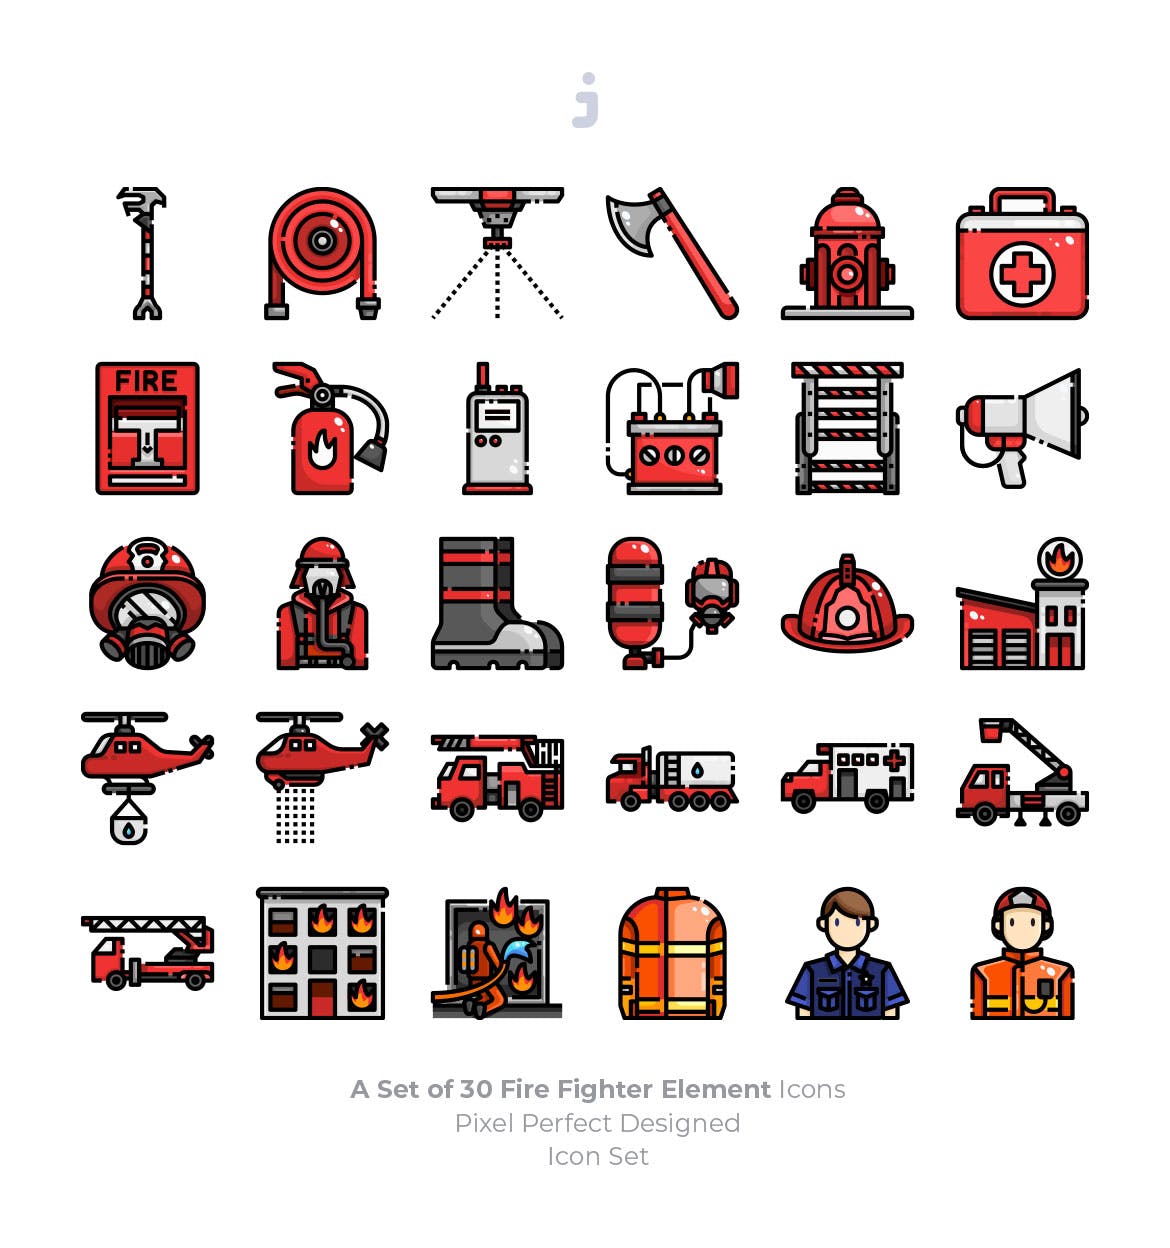  30消防队员元素线性图标源文件下载30 Fire Fighter Icons